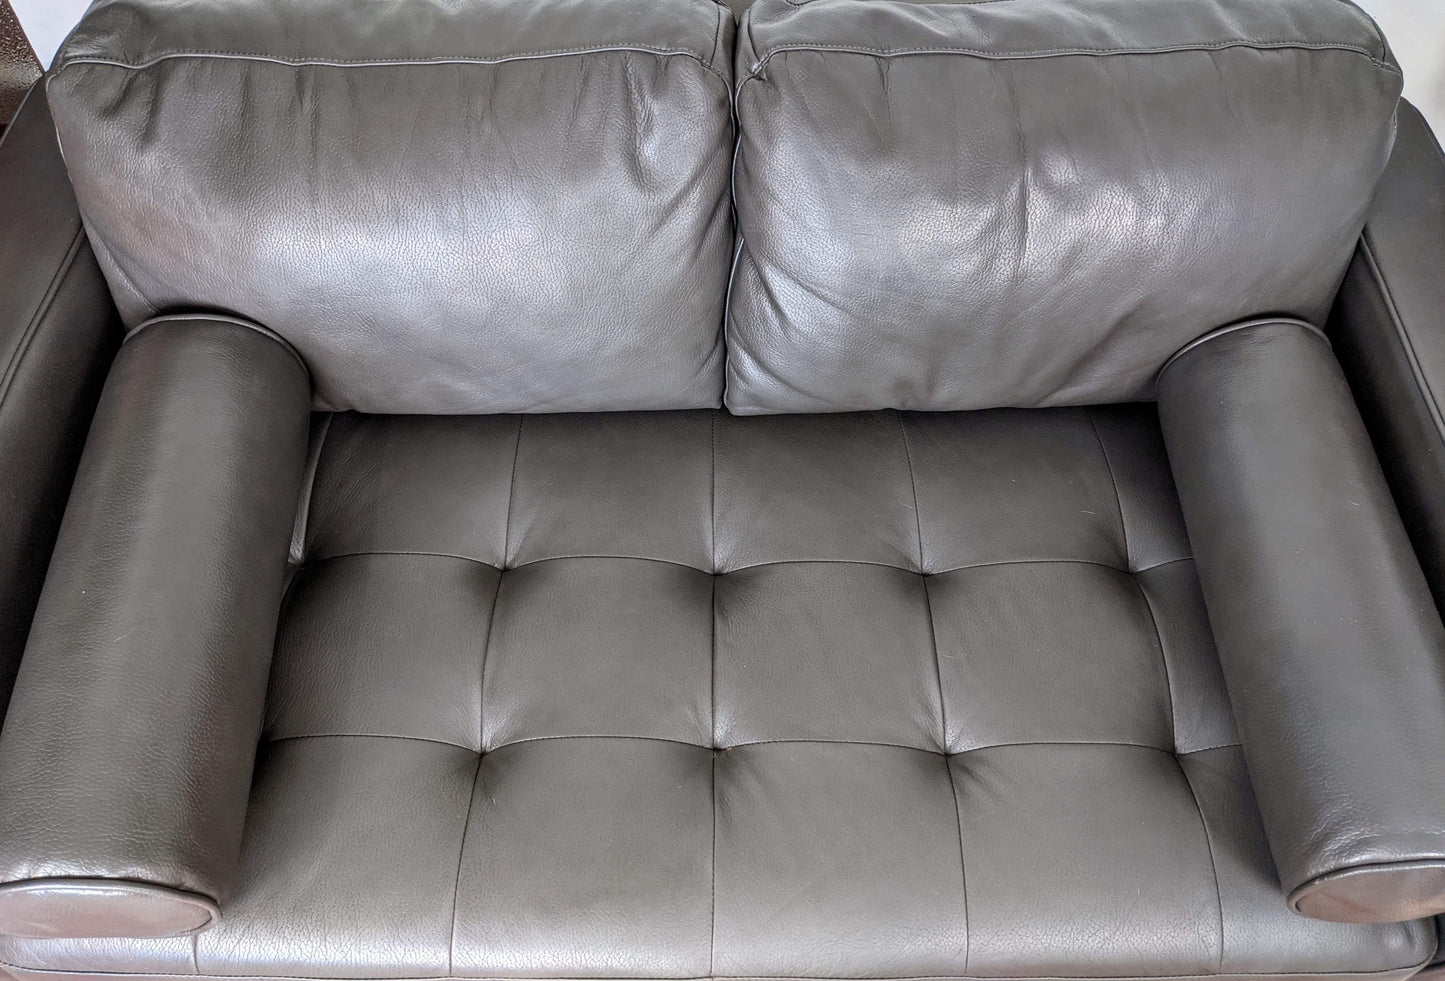 The Concord Sofa